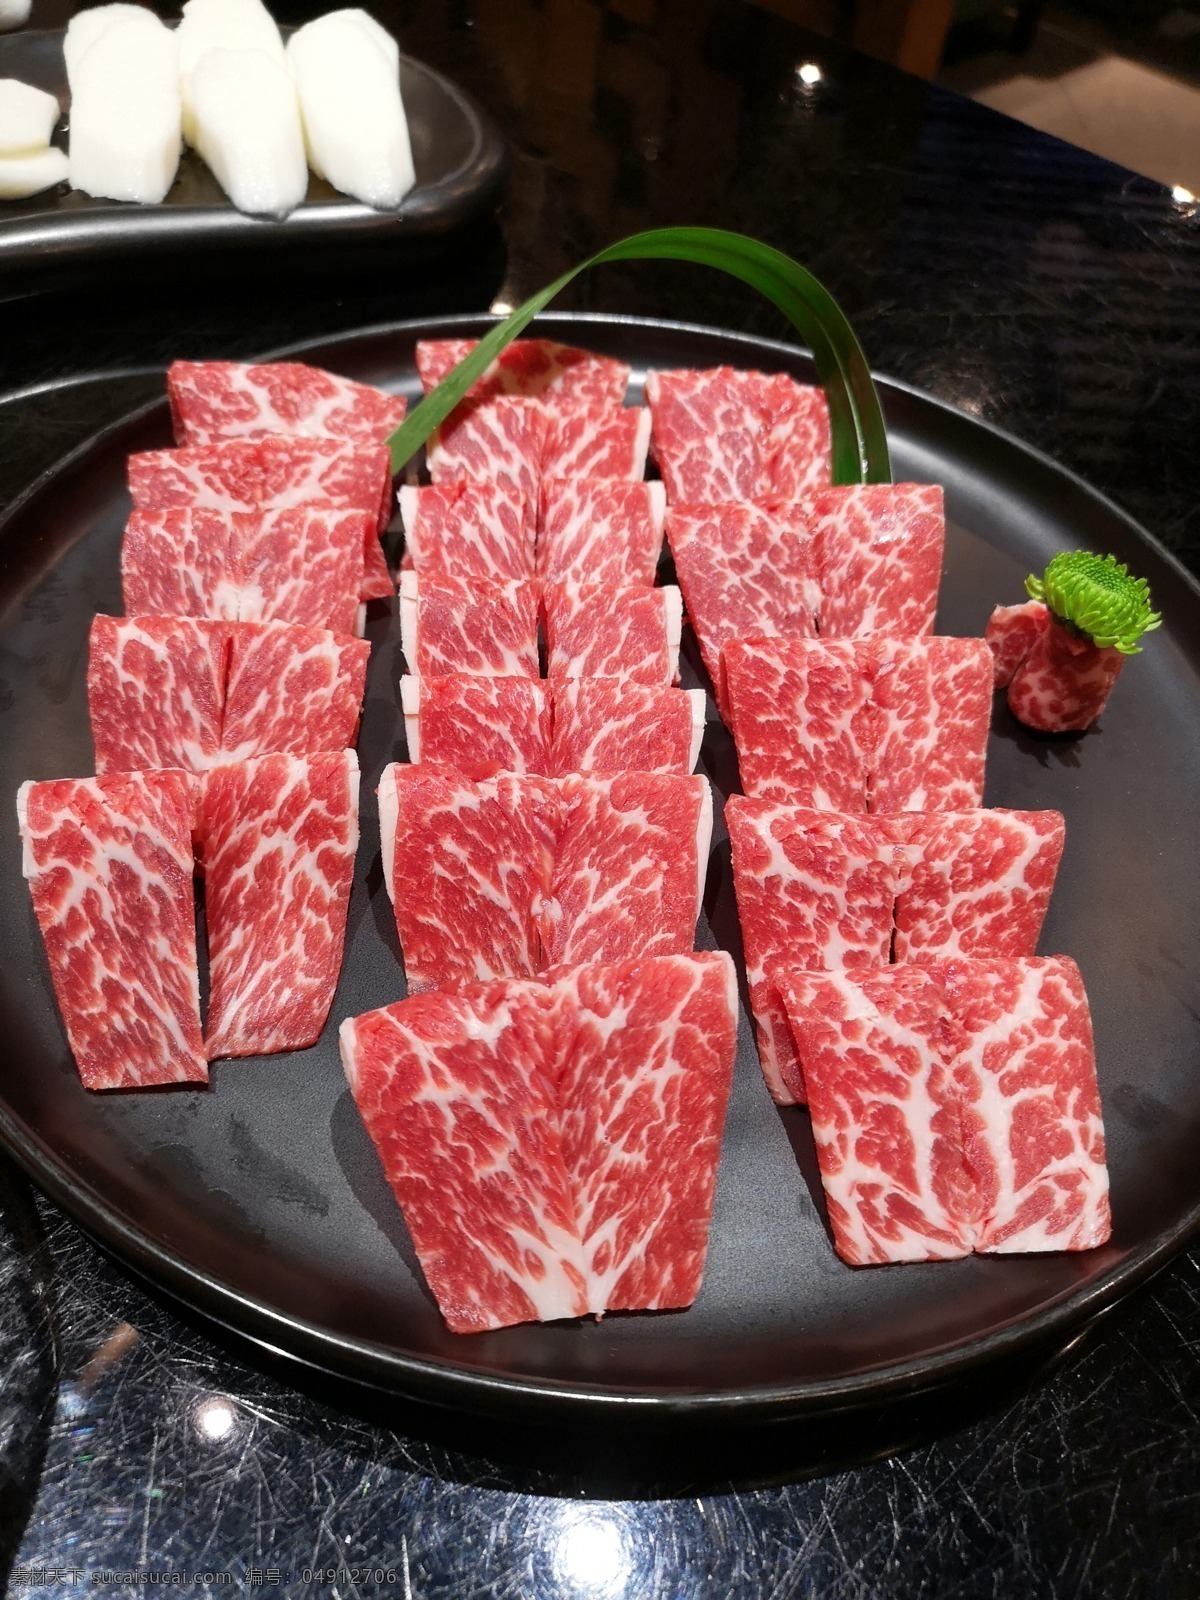 嫩牛肉 牛肉 鲜牛肉 牛肉片 肉 牛 刷牛肉 火锅 餐饮美食 传统美食